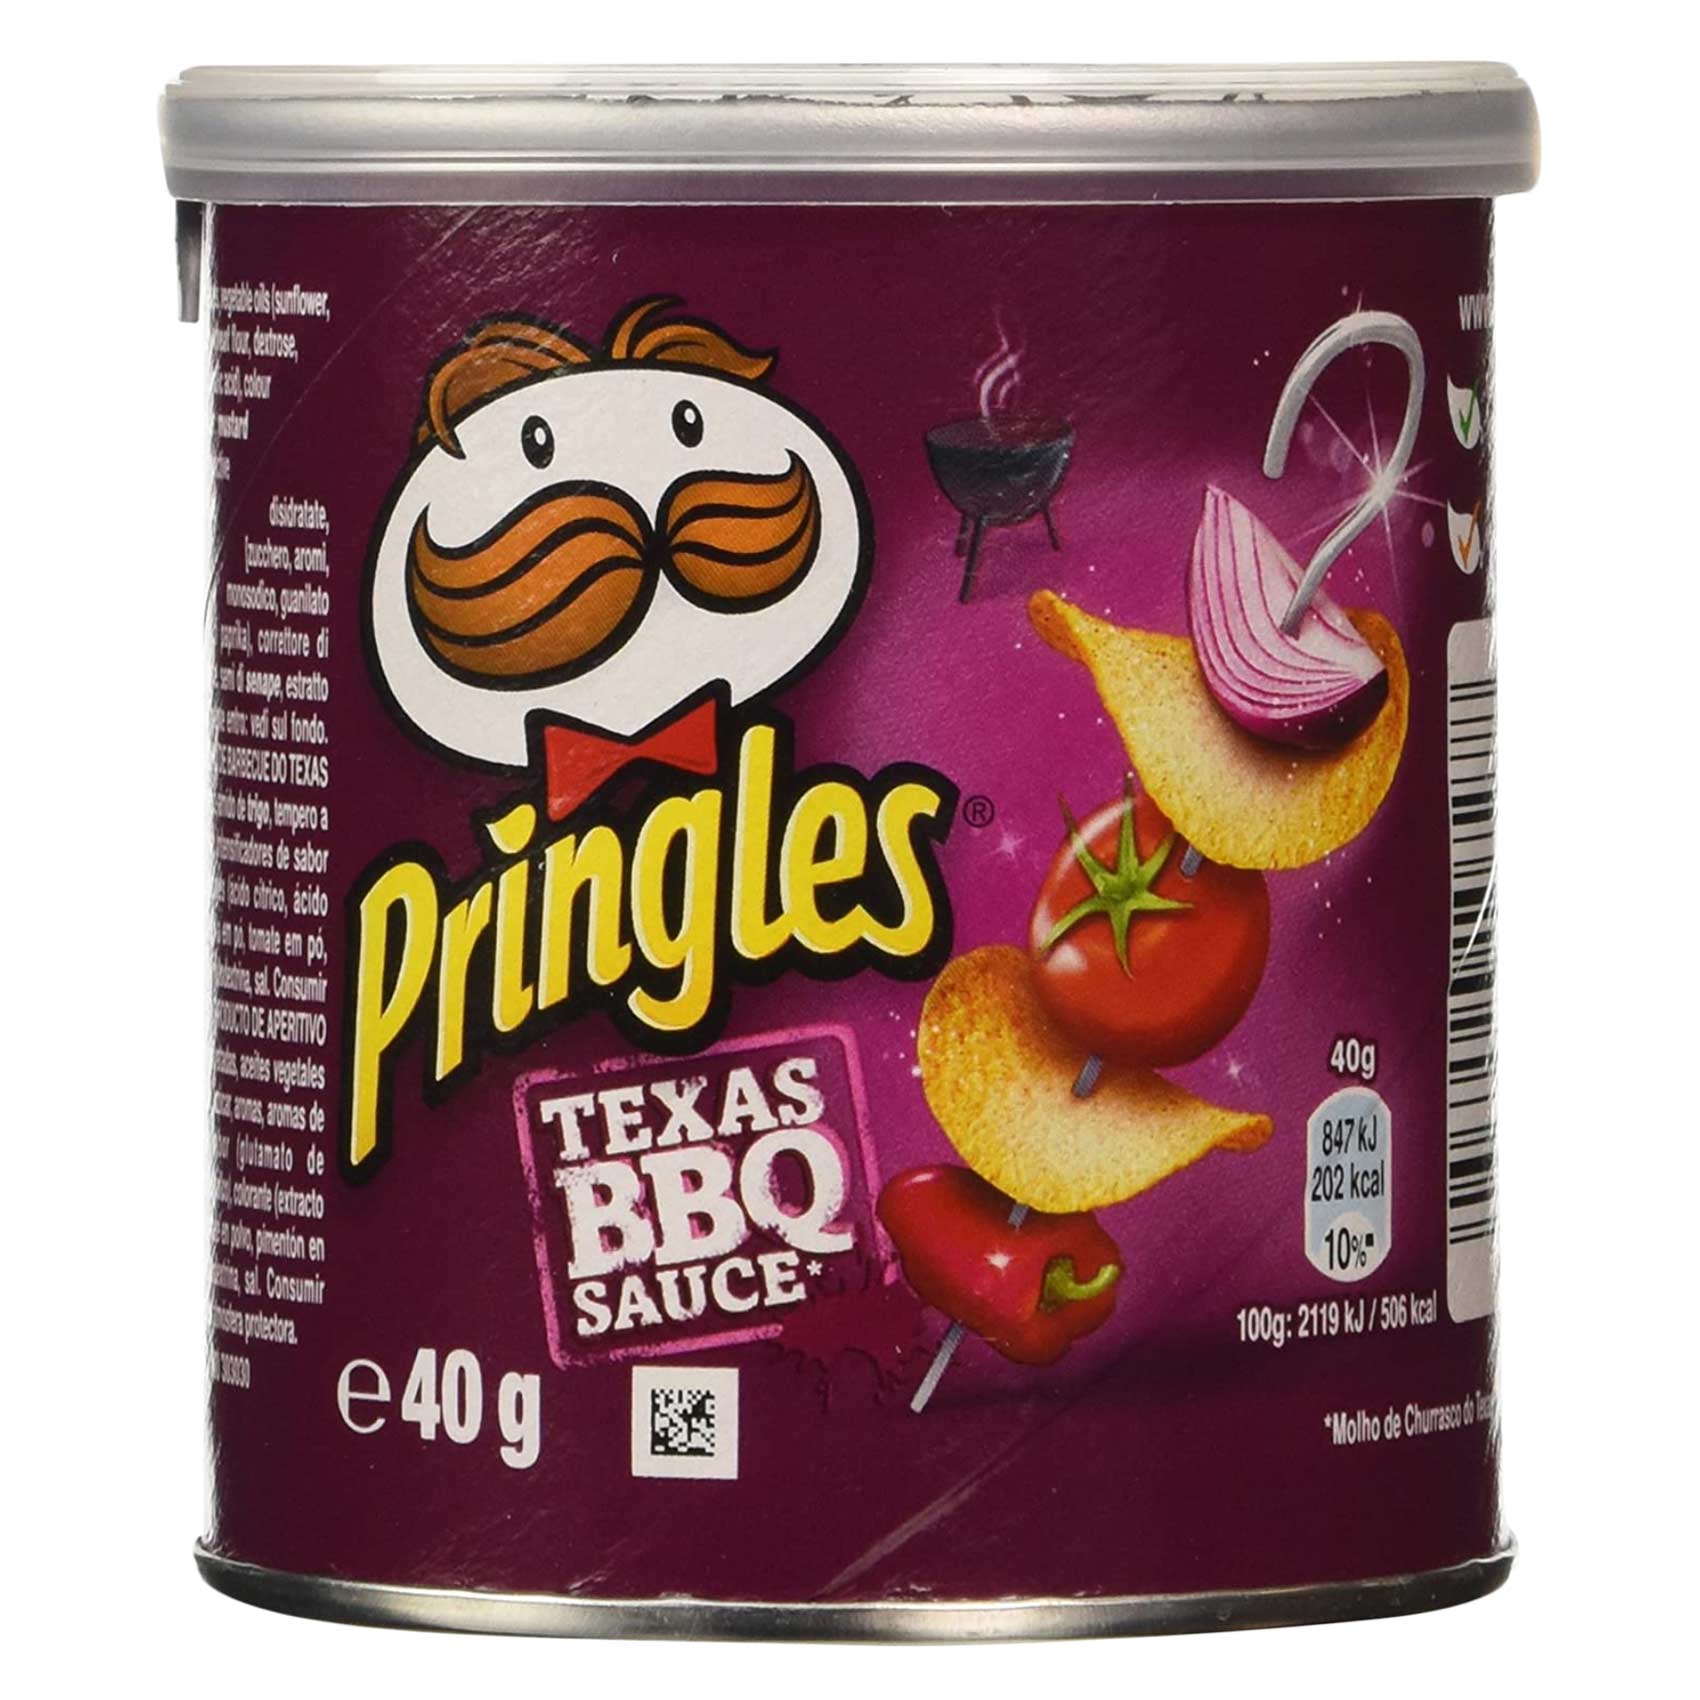 Pringles Texas BBQ Sauce Potato Chips 40g